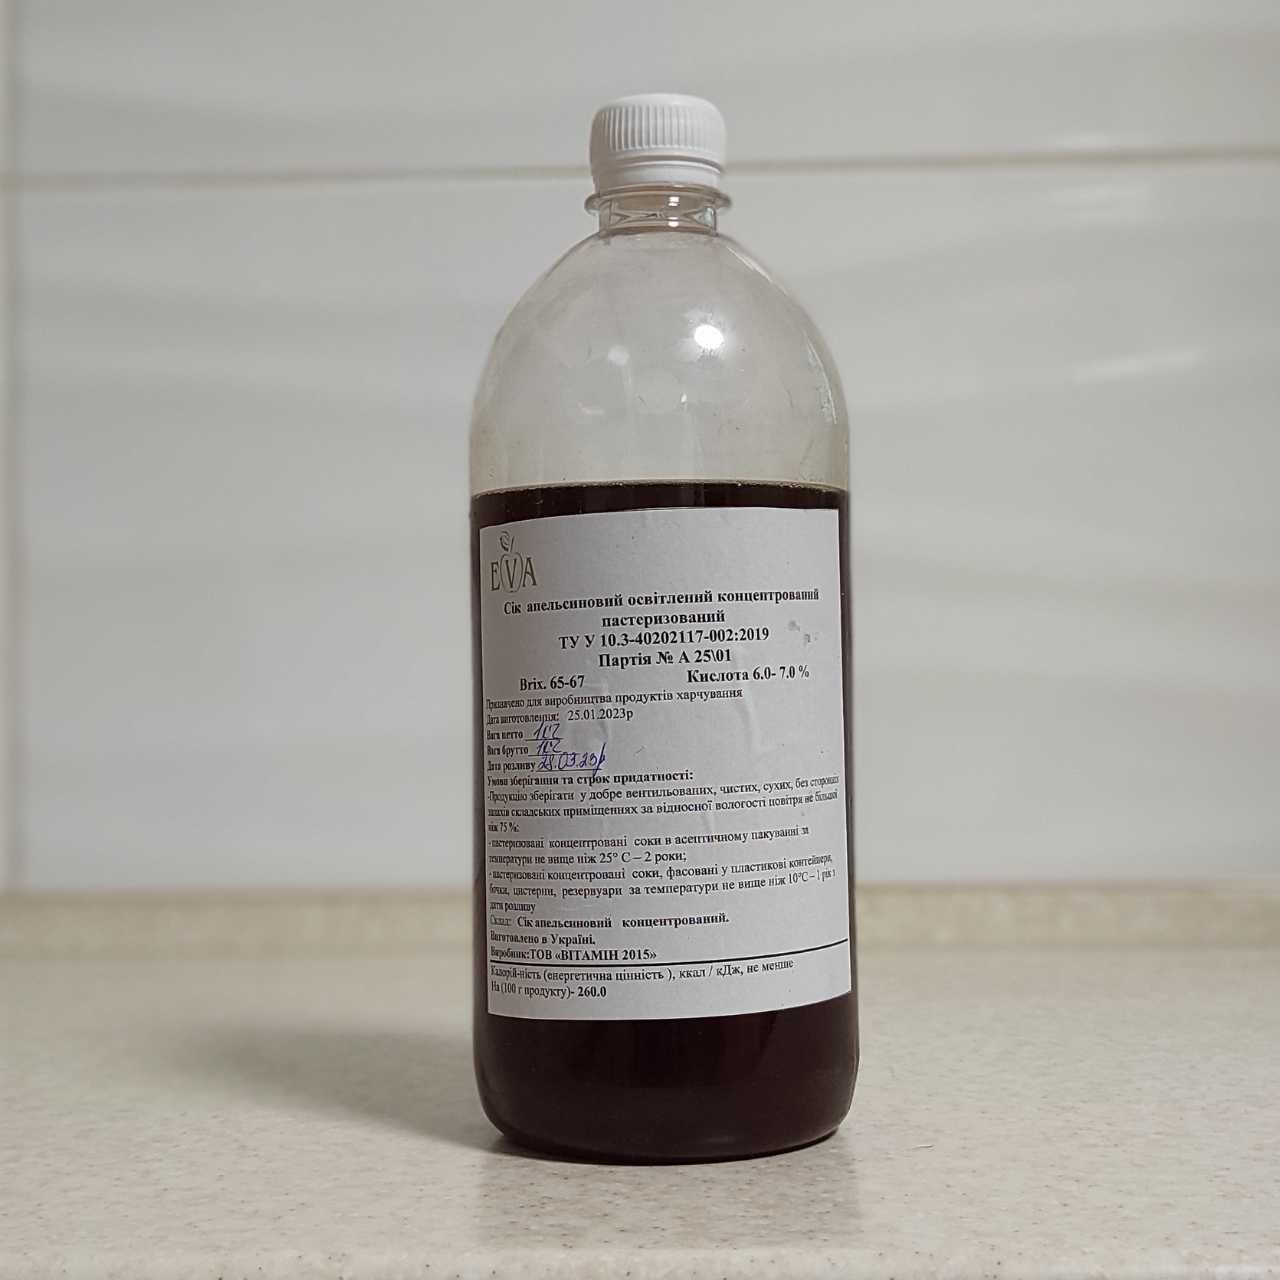 Концентрированный апельсиновый сок (65-67 ВХ) бутылка 1 кг / 0,76 л